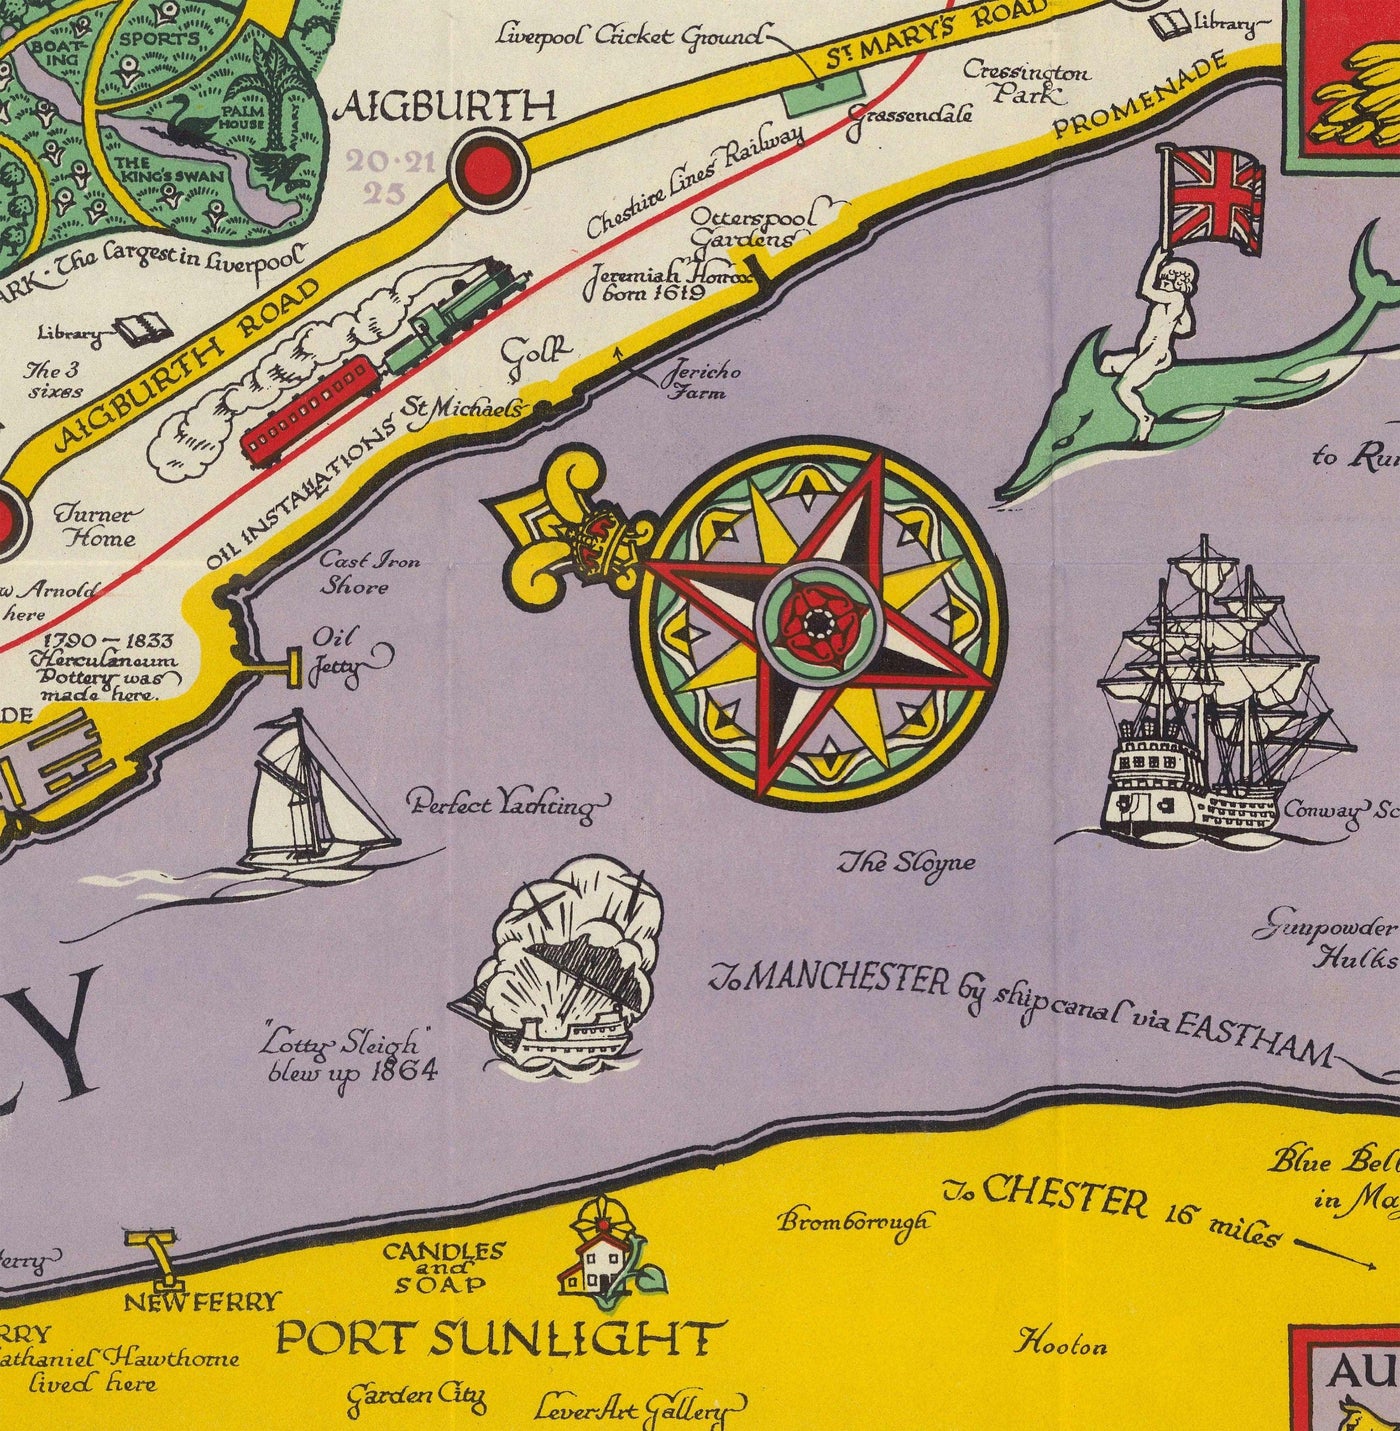 Ancienne carte de Liverpool, 1934 par GH Parry - Tableau de la ville pictoriale - Mersey, quais, parcs, bâtiments anciens